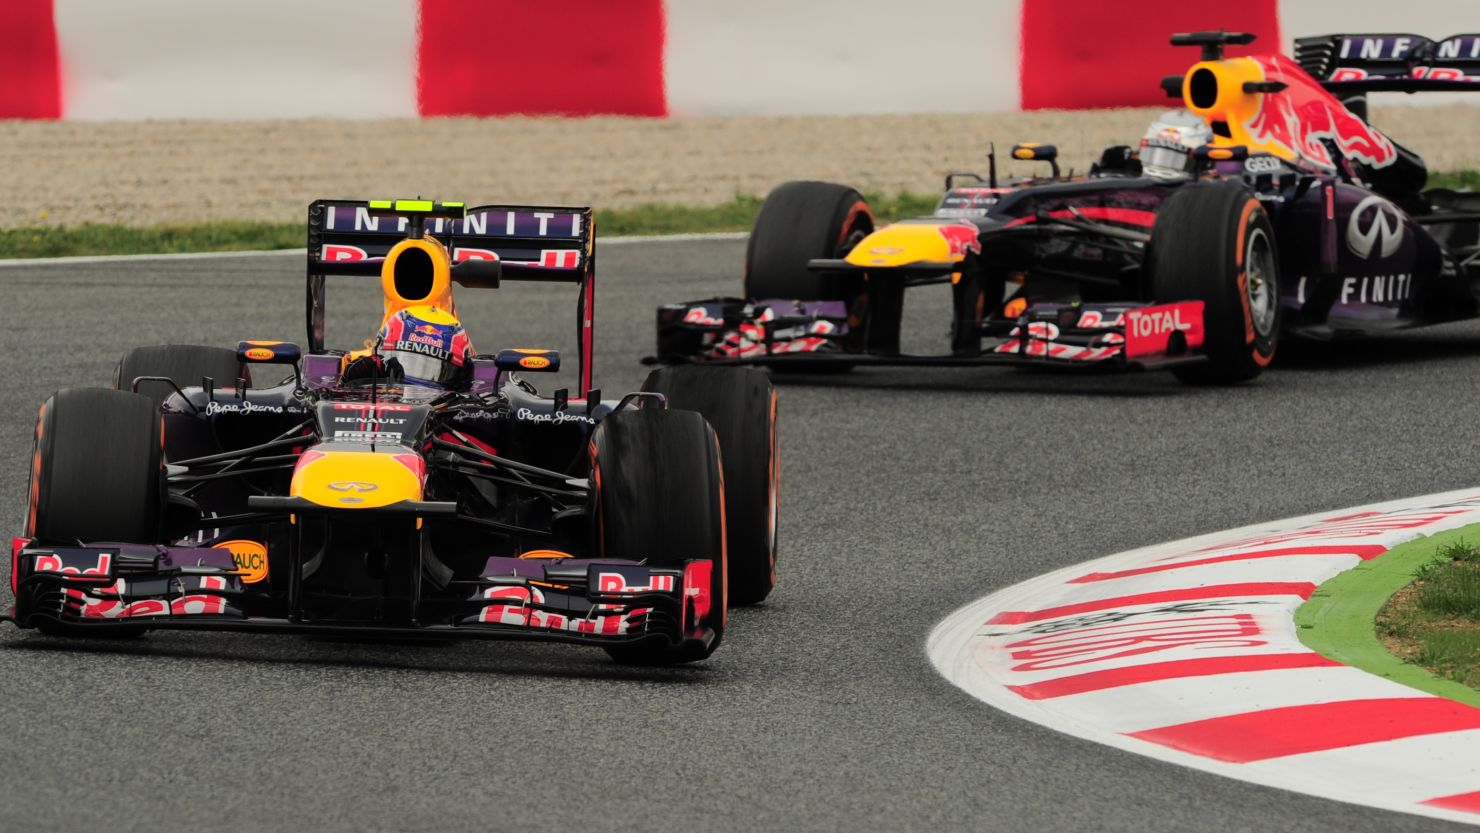 Sebastian Vettel leads teammate Mark Webber during practice sessions for the Spanish Grand Prix in Barcelona.